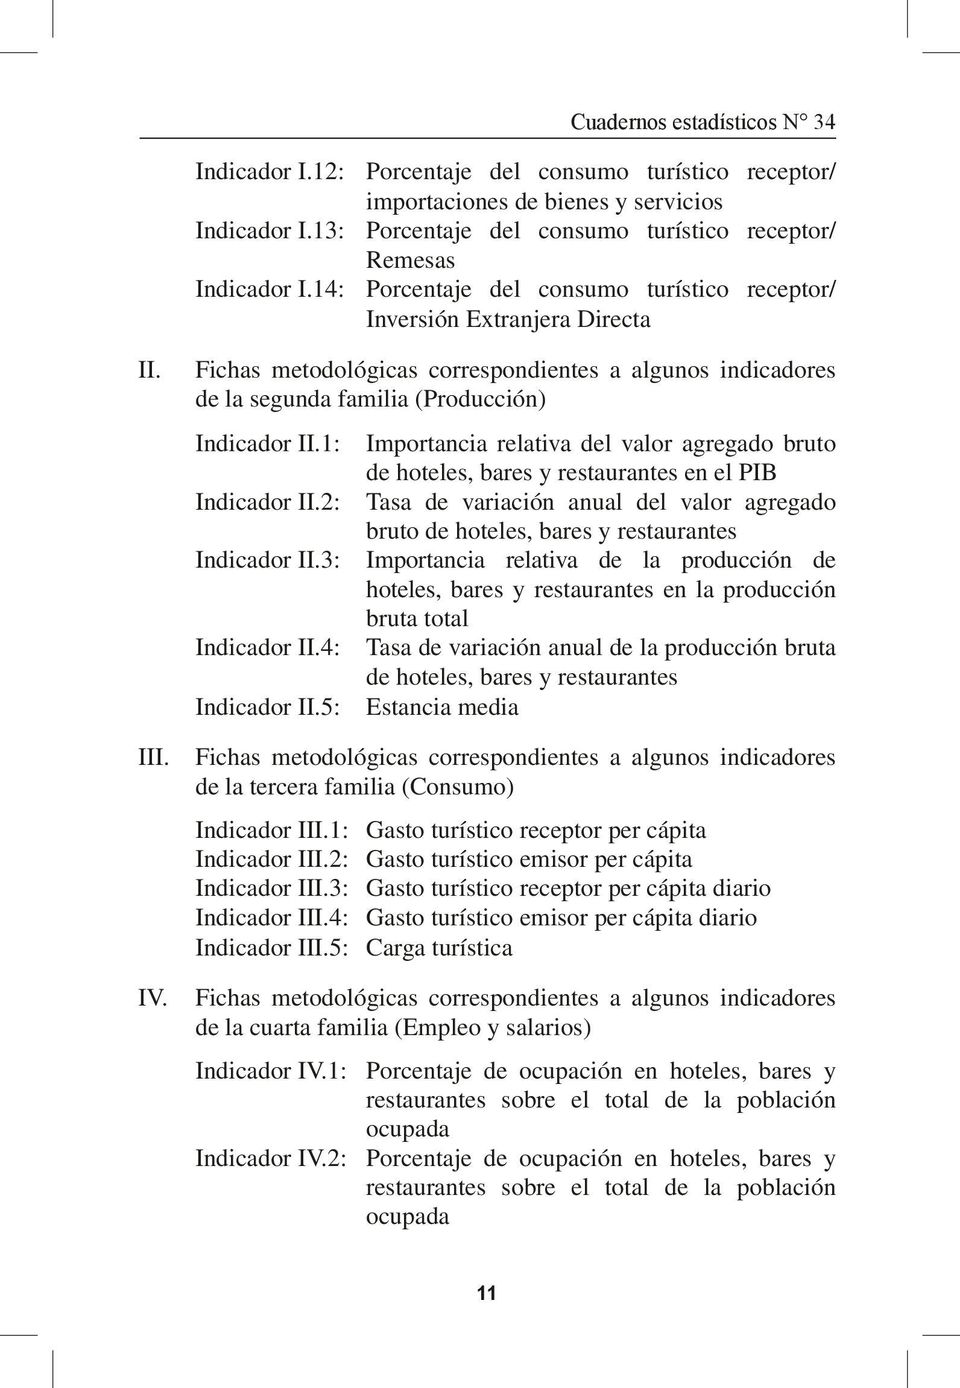 Fichas metodológicas correspondientes a algunos indicadores de la segunda familia (Producción) Indicador II.1: Indicador II.2: Indicador II.3: Indicador II.4: Indicador II.